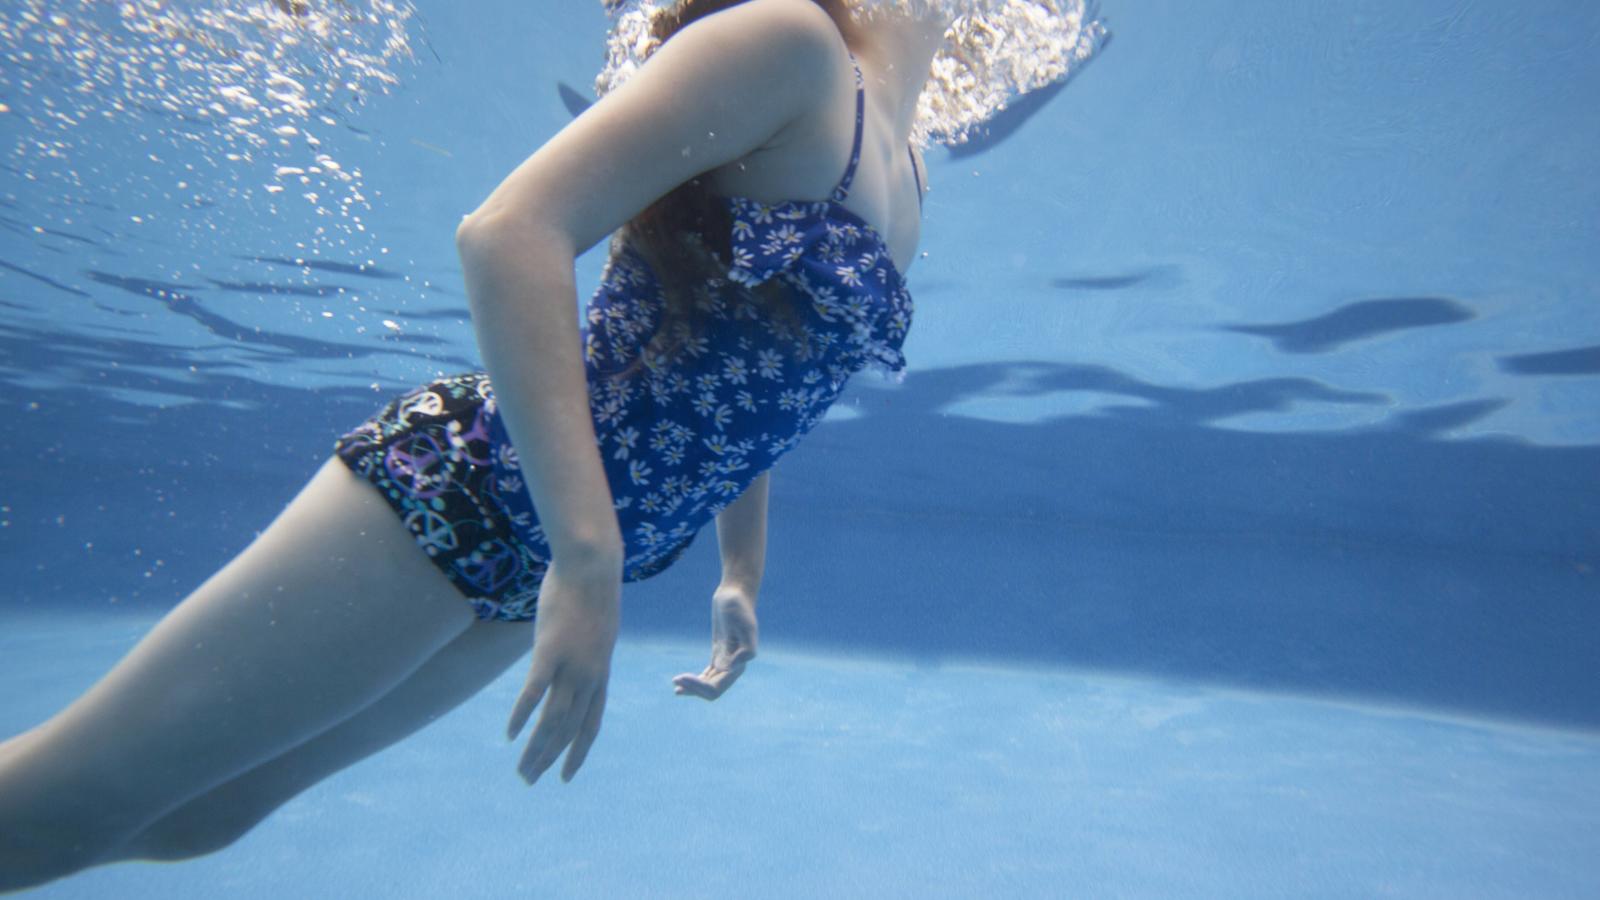 Ein Mädchen, das nicht schwimmen kann, geht ohne helfendes Zubehör ins Wasser und ertrinkt (Symbolbild)